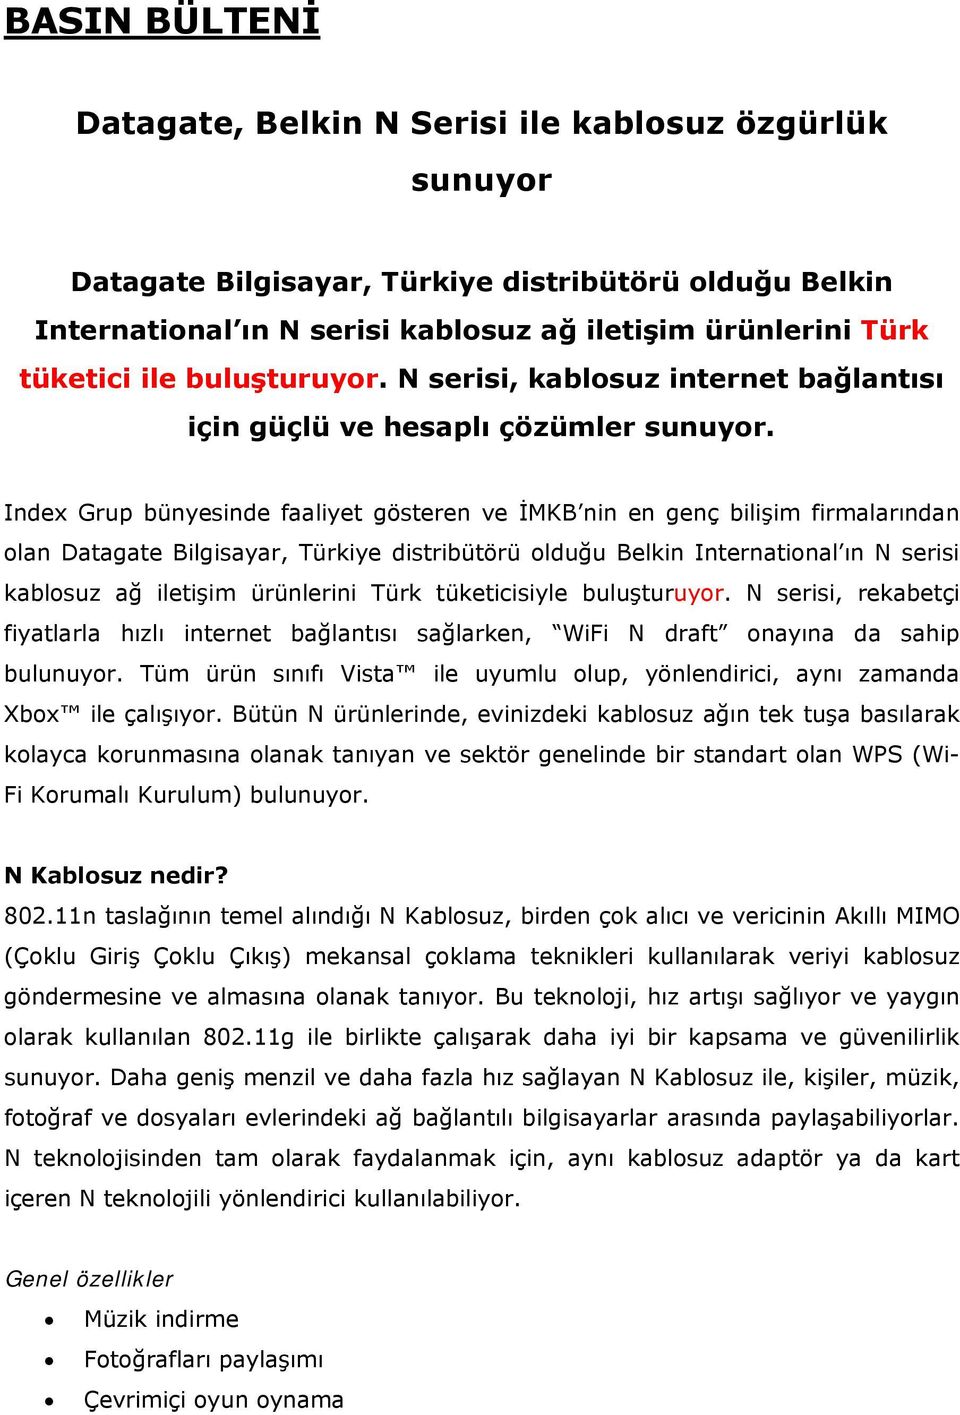 Index Grup bünyesinde faaliyet gösteren ve İMKB nin en genç bilişim firmalarından olan Datagate Bilgisayar, Türkiye distribütörü olduğu Belkin International ın N serisi kablosuz ağ iletişim